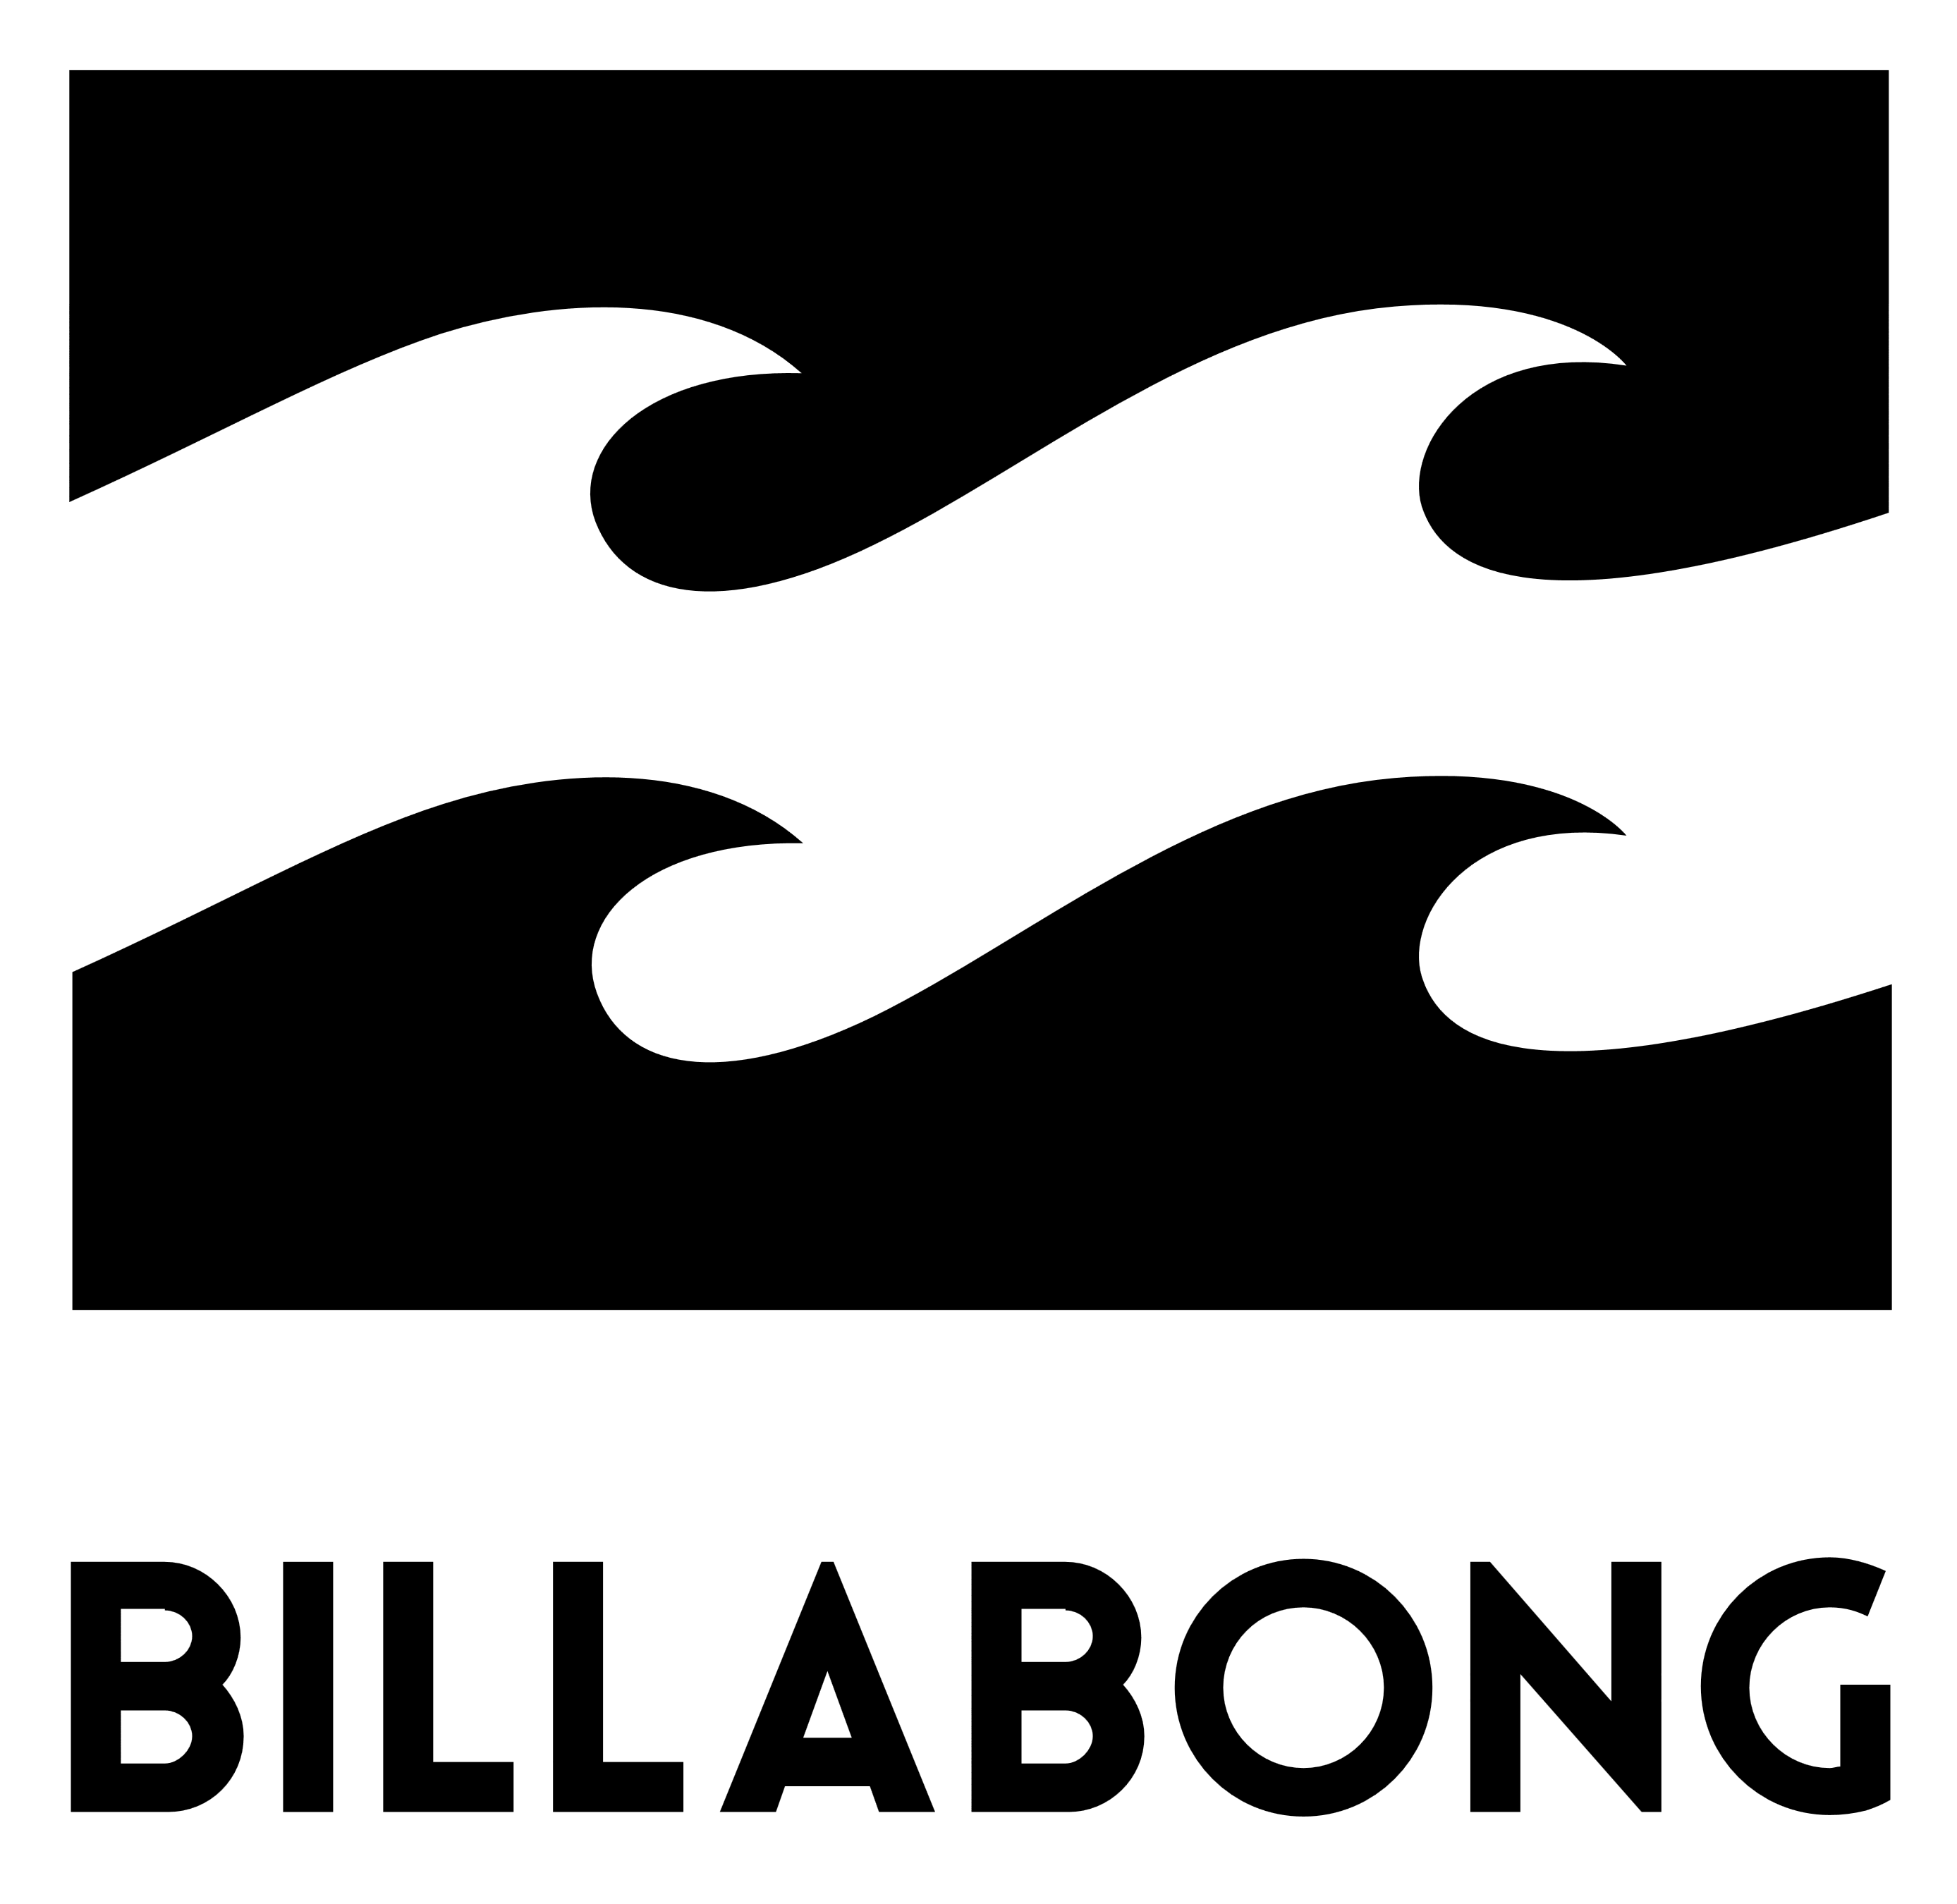 Billabong logo, logotype